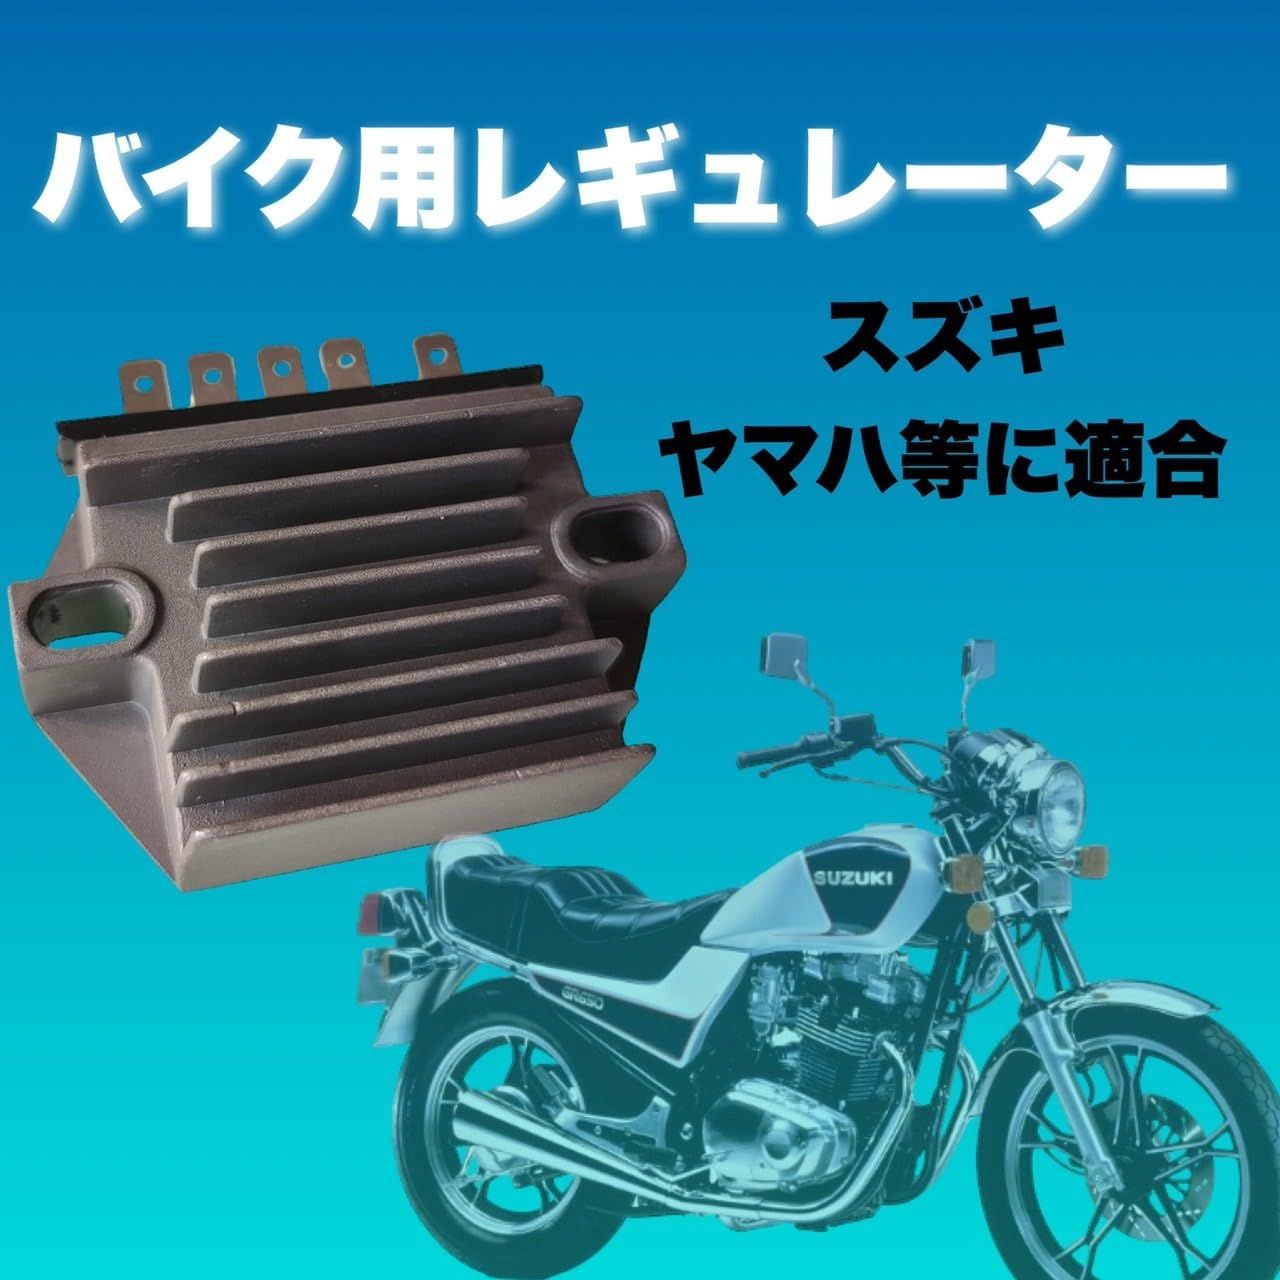 GS750用マフラー - オートバイ